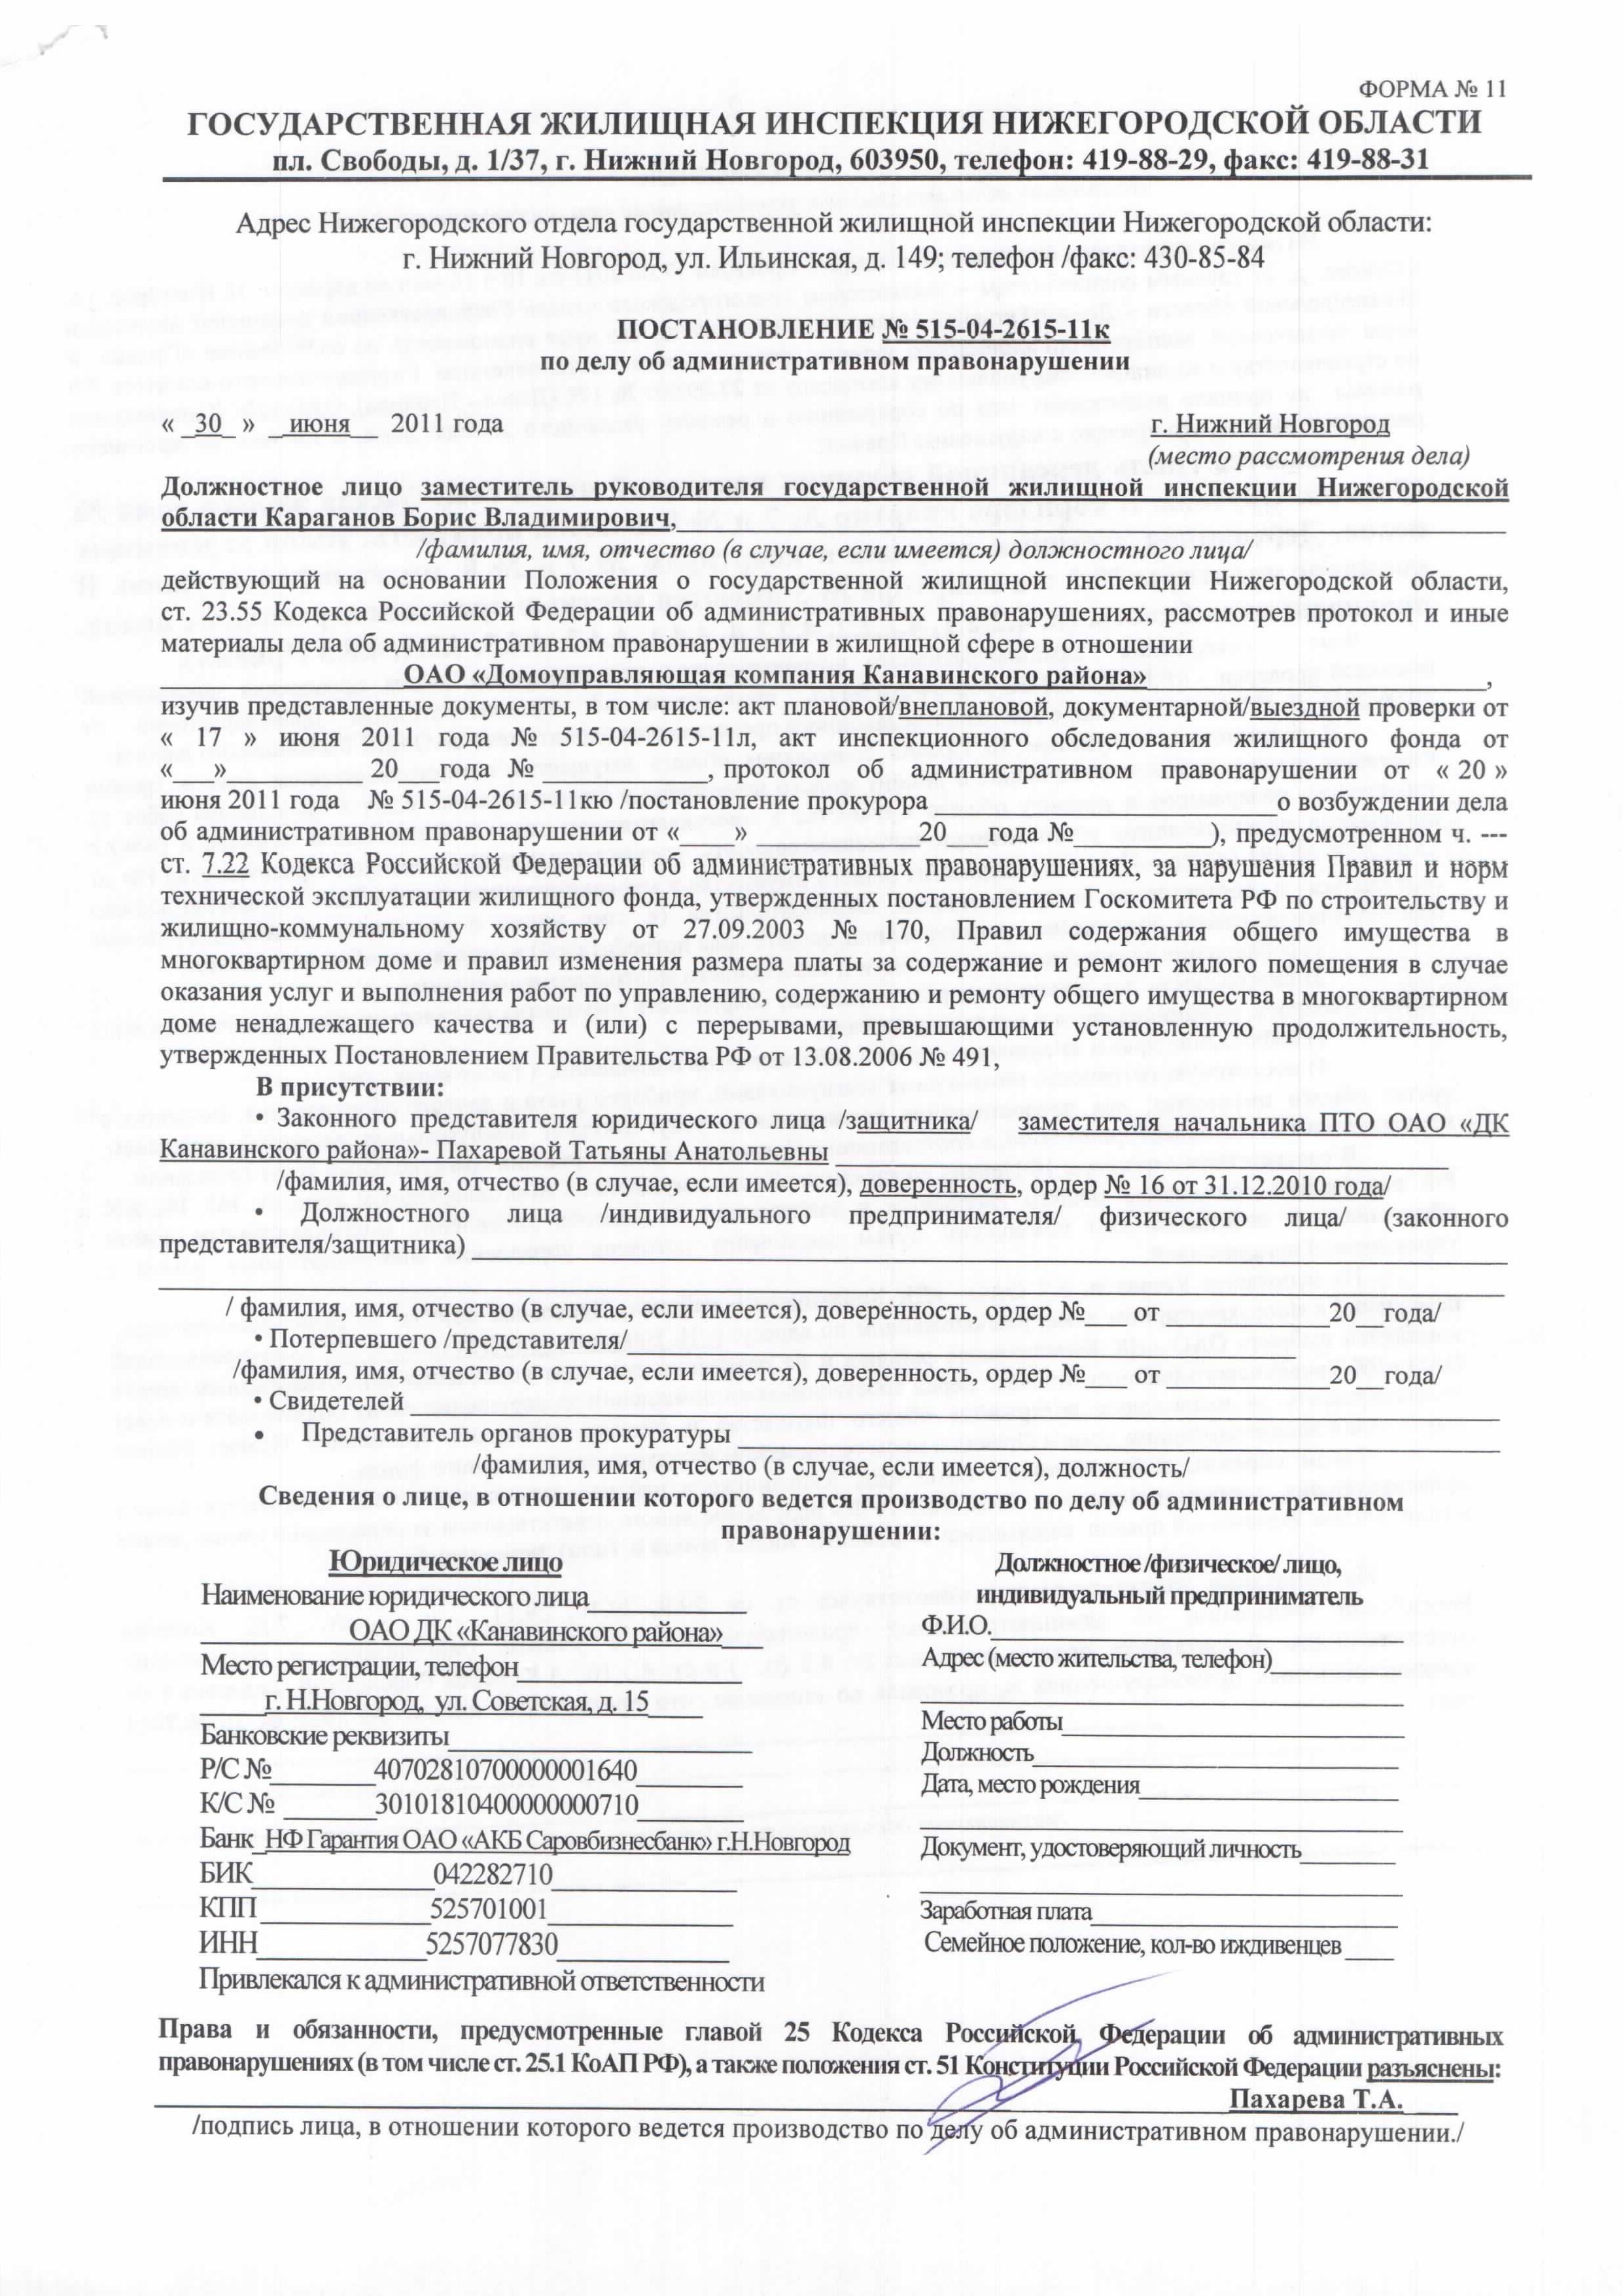 Сайт жилищной инспекции нижегородской области. Постановление должностного лица.